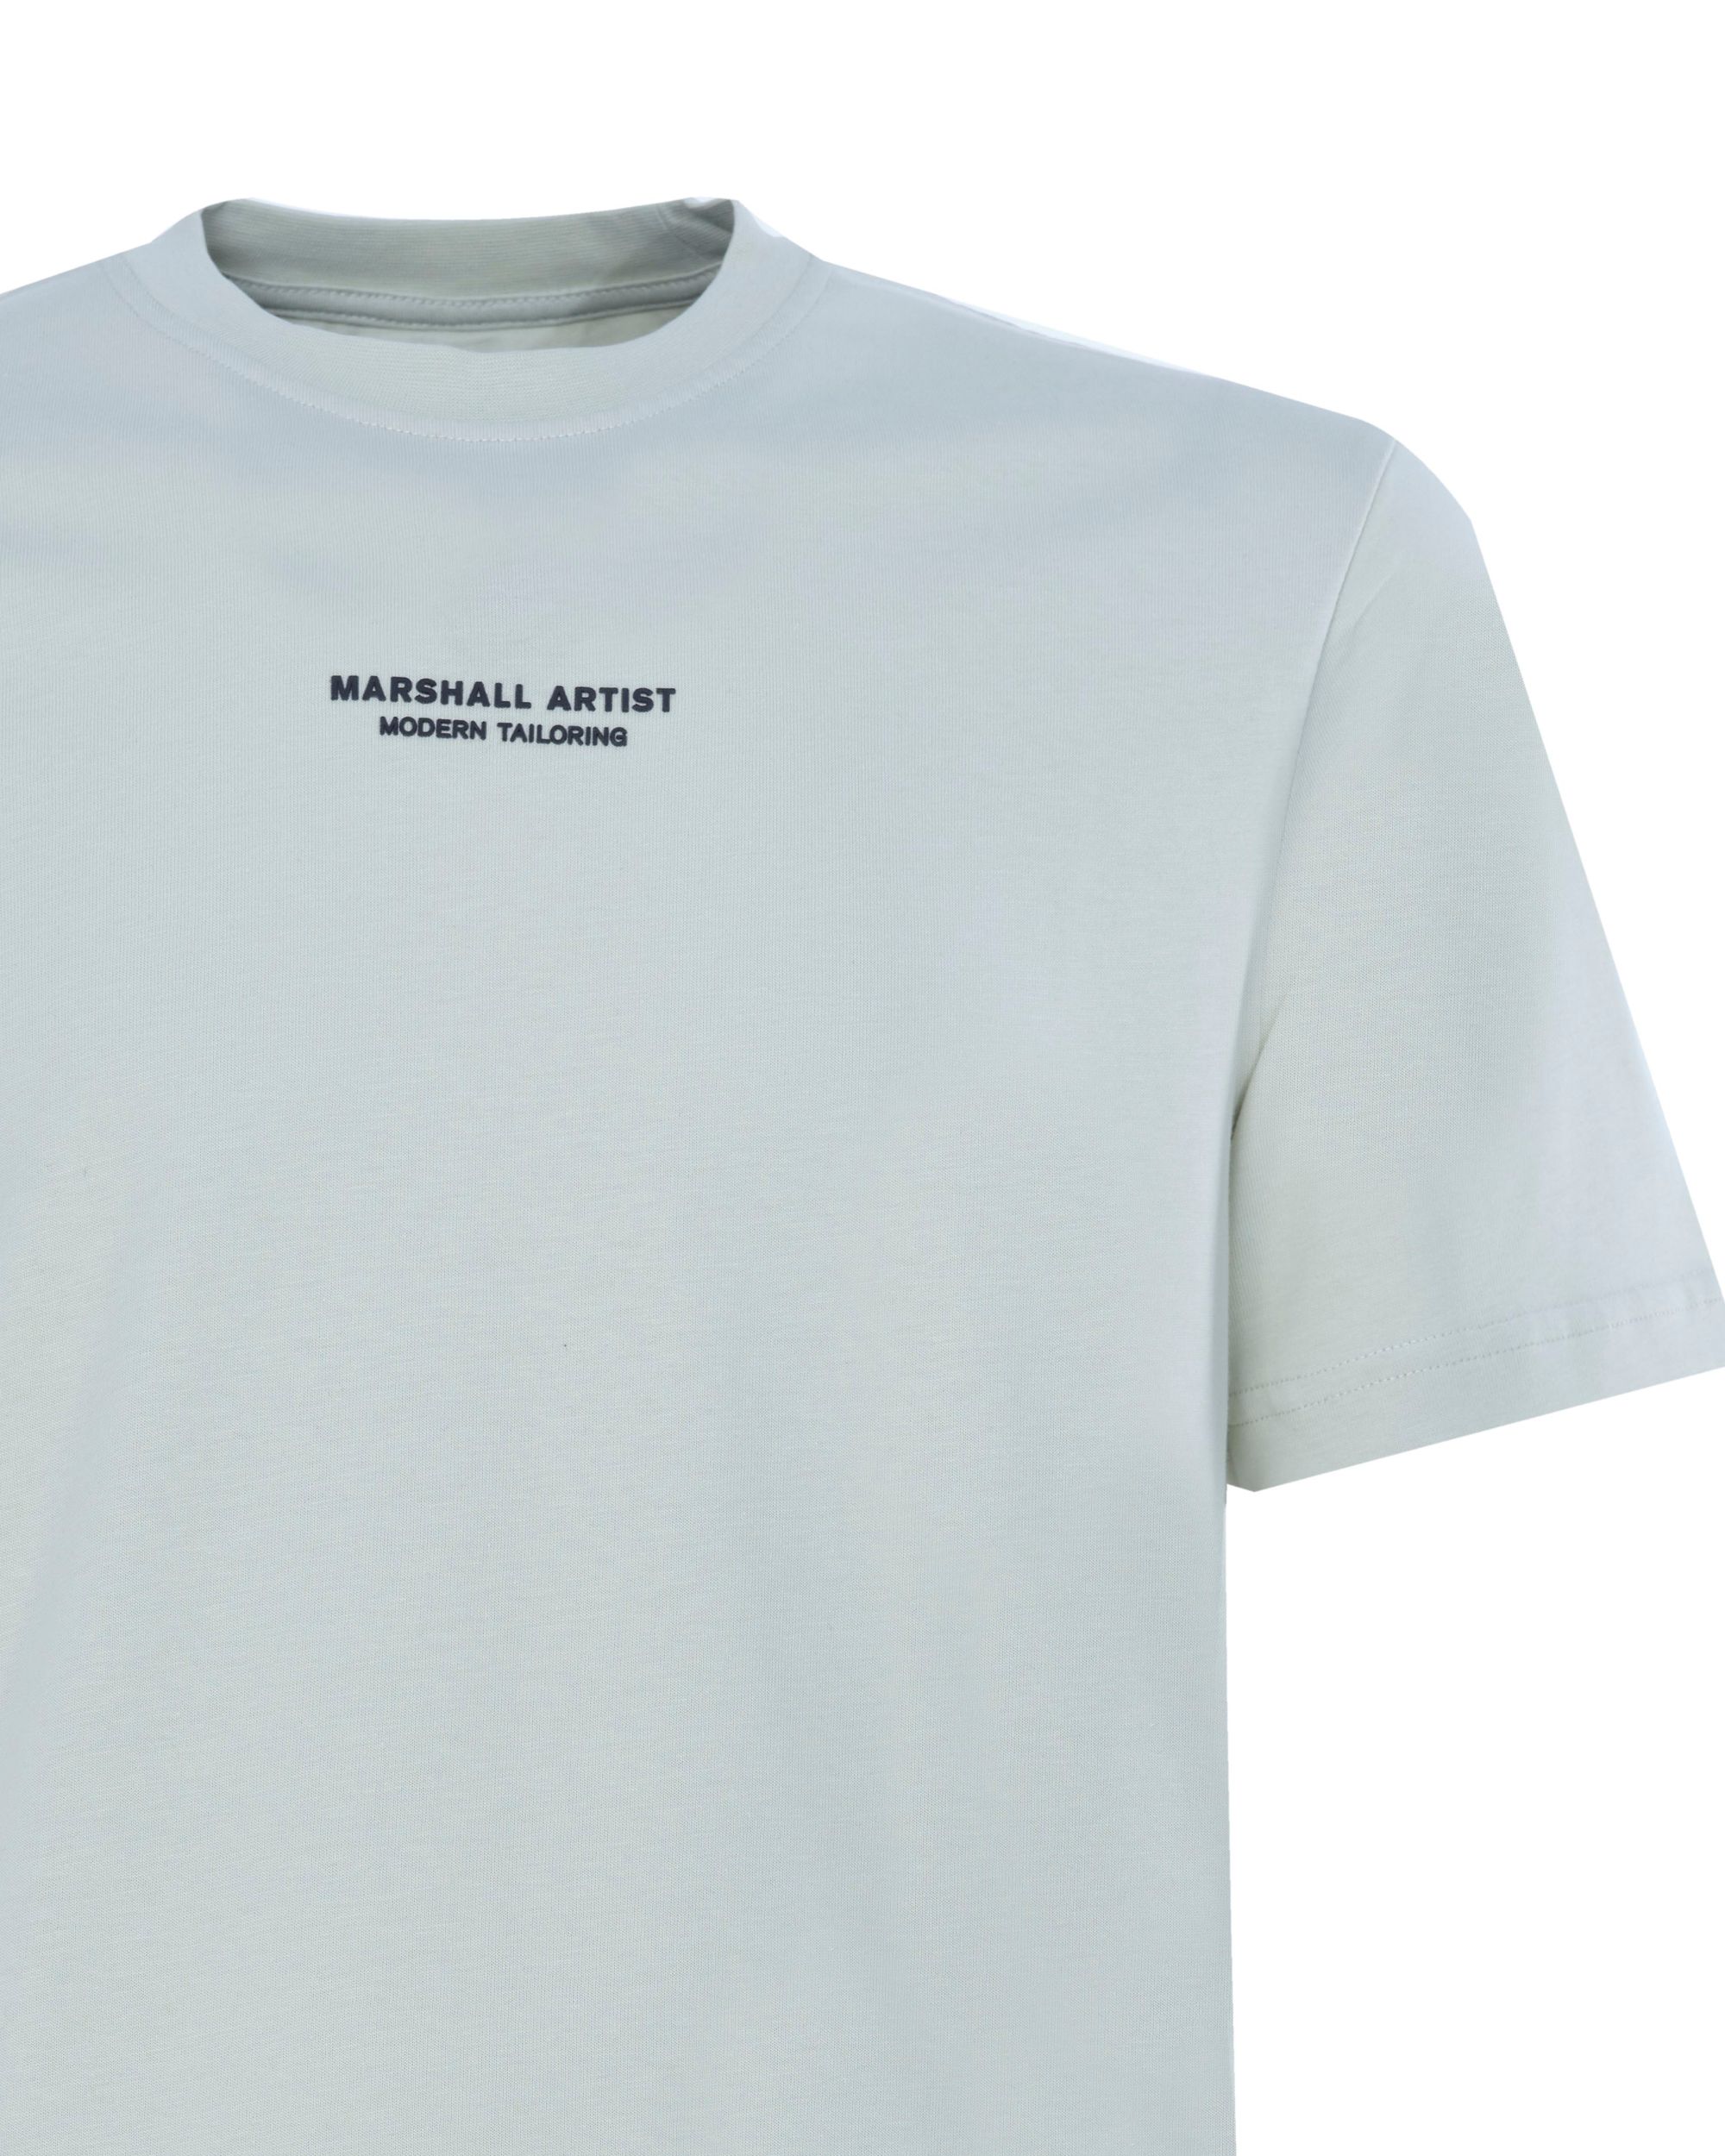 Marshall Artist T-shirt KM Licht groen 081057-001-L